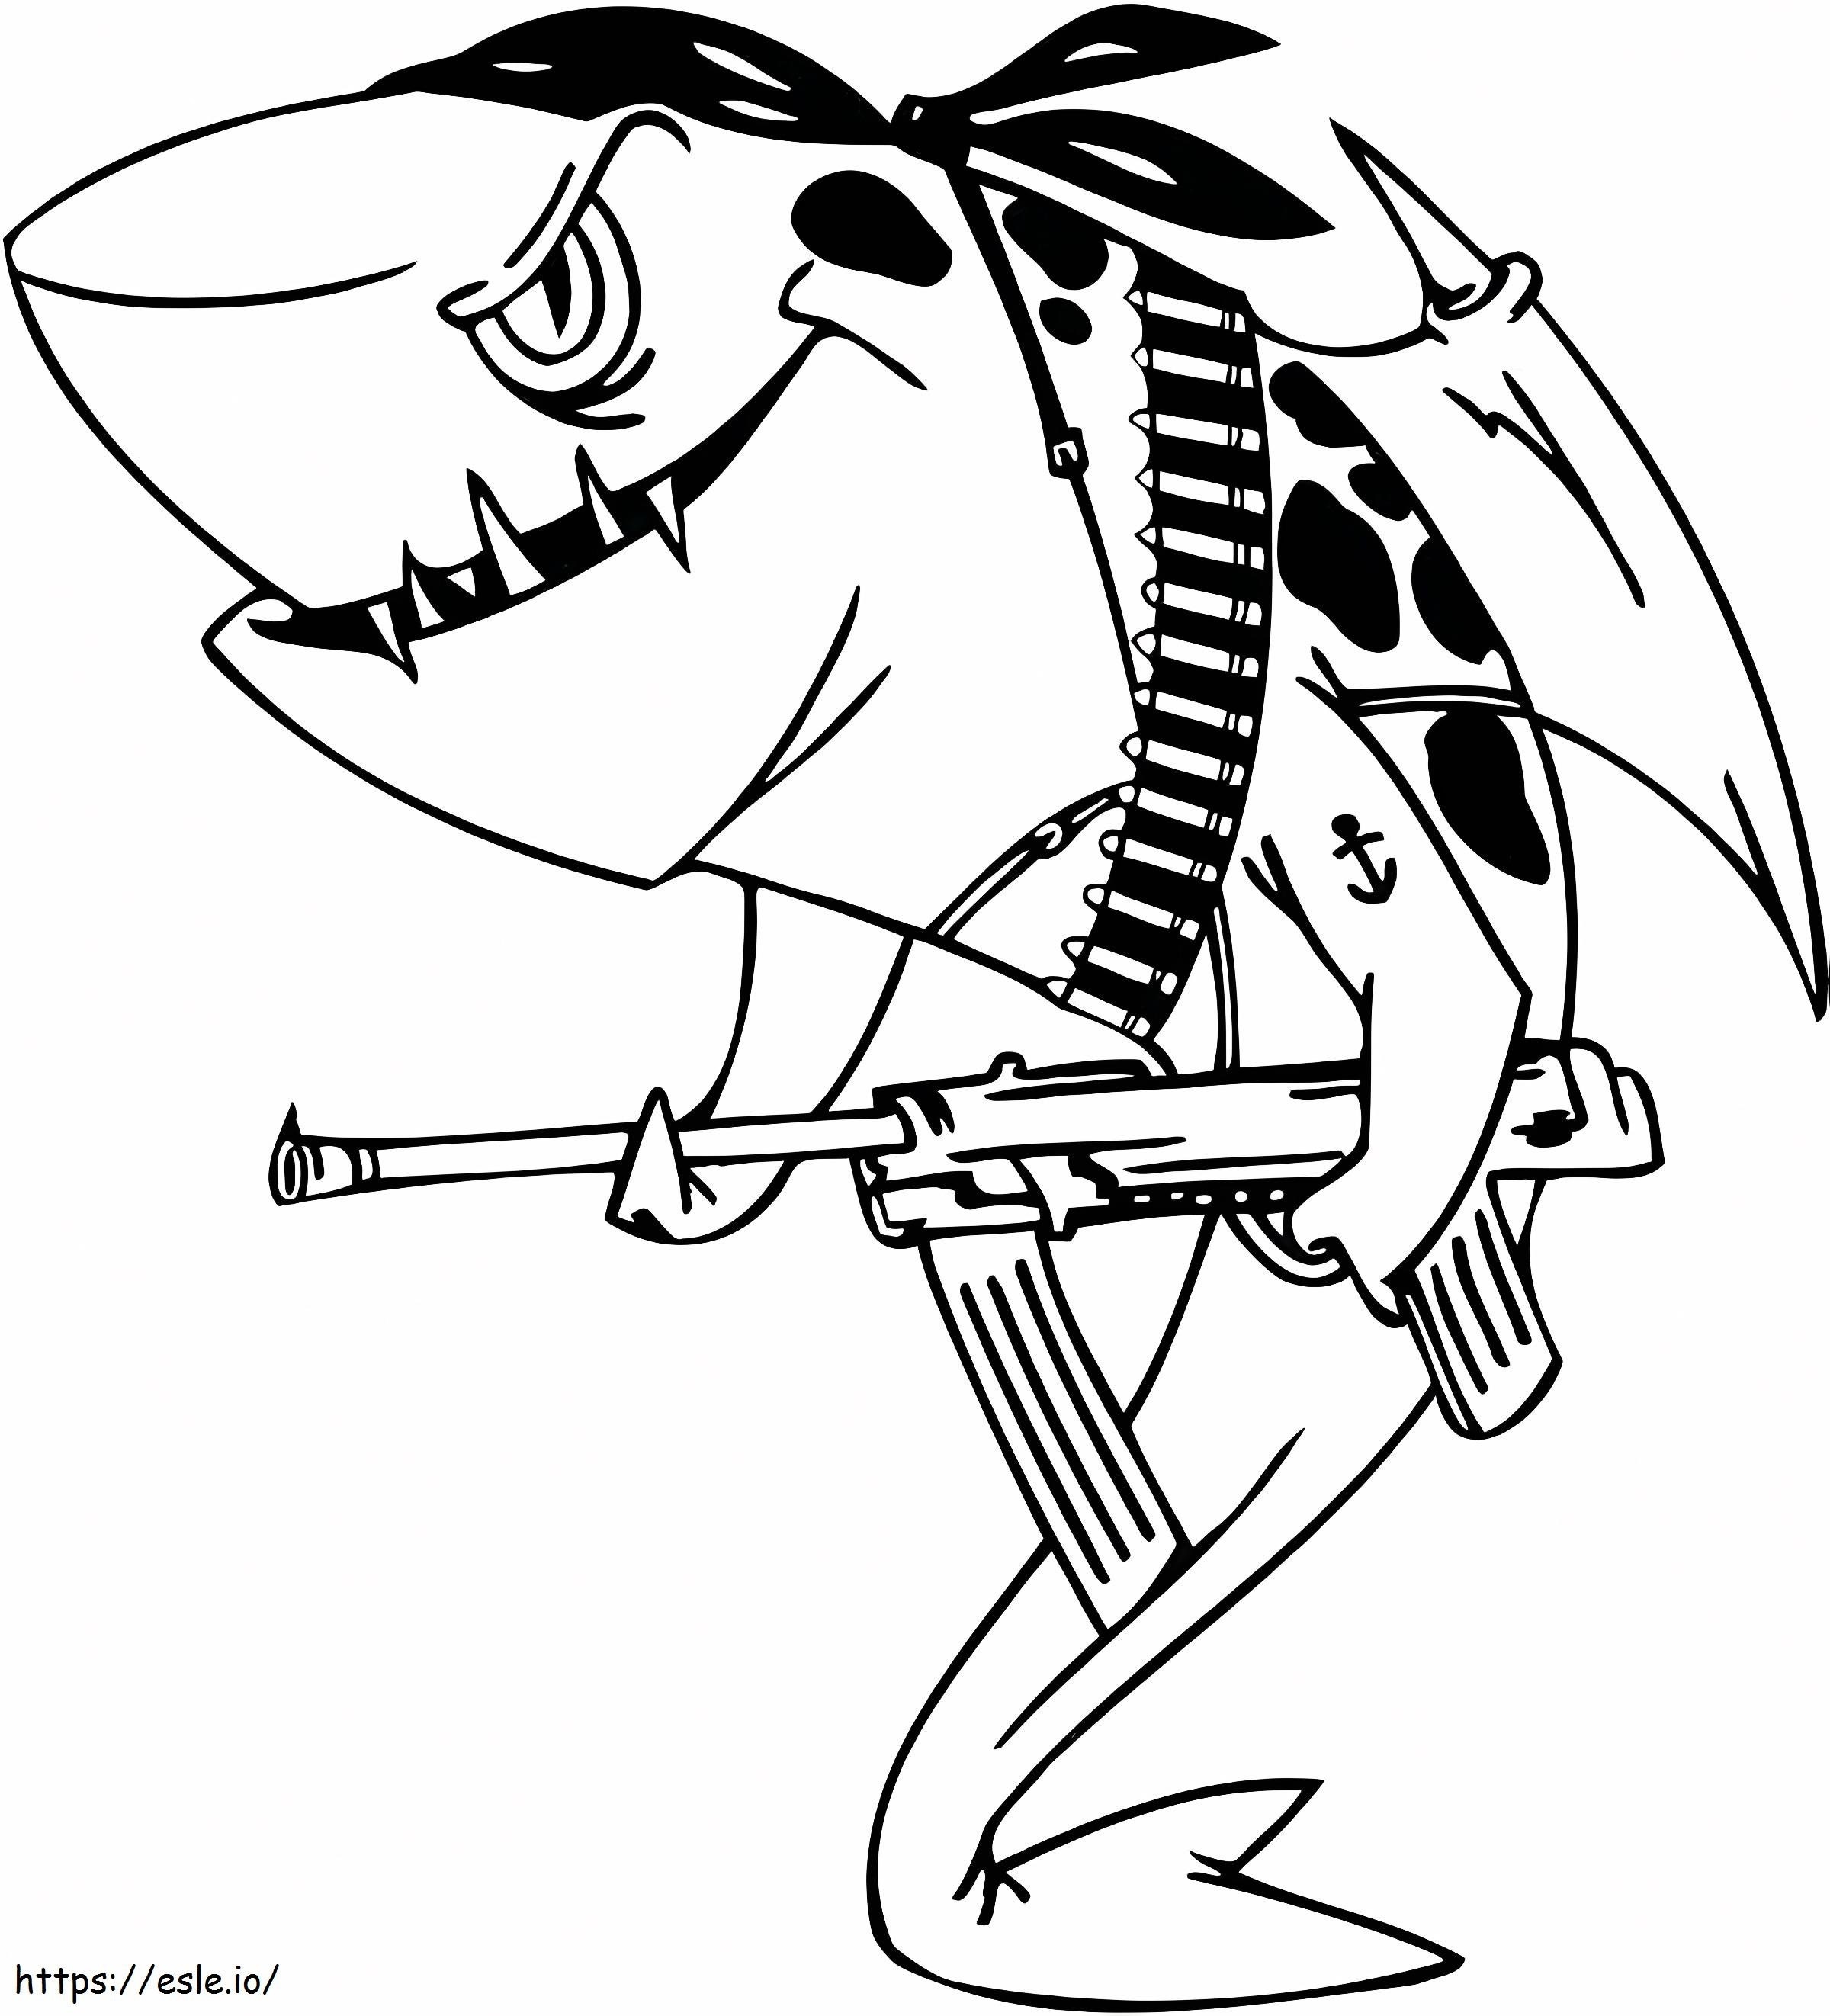 _Malvorlagen Haie Weißer Hai Hai Haie Eine Illustration des Piratenhais der Tigerhaie ausmalbilder